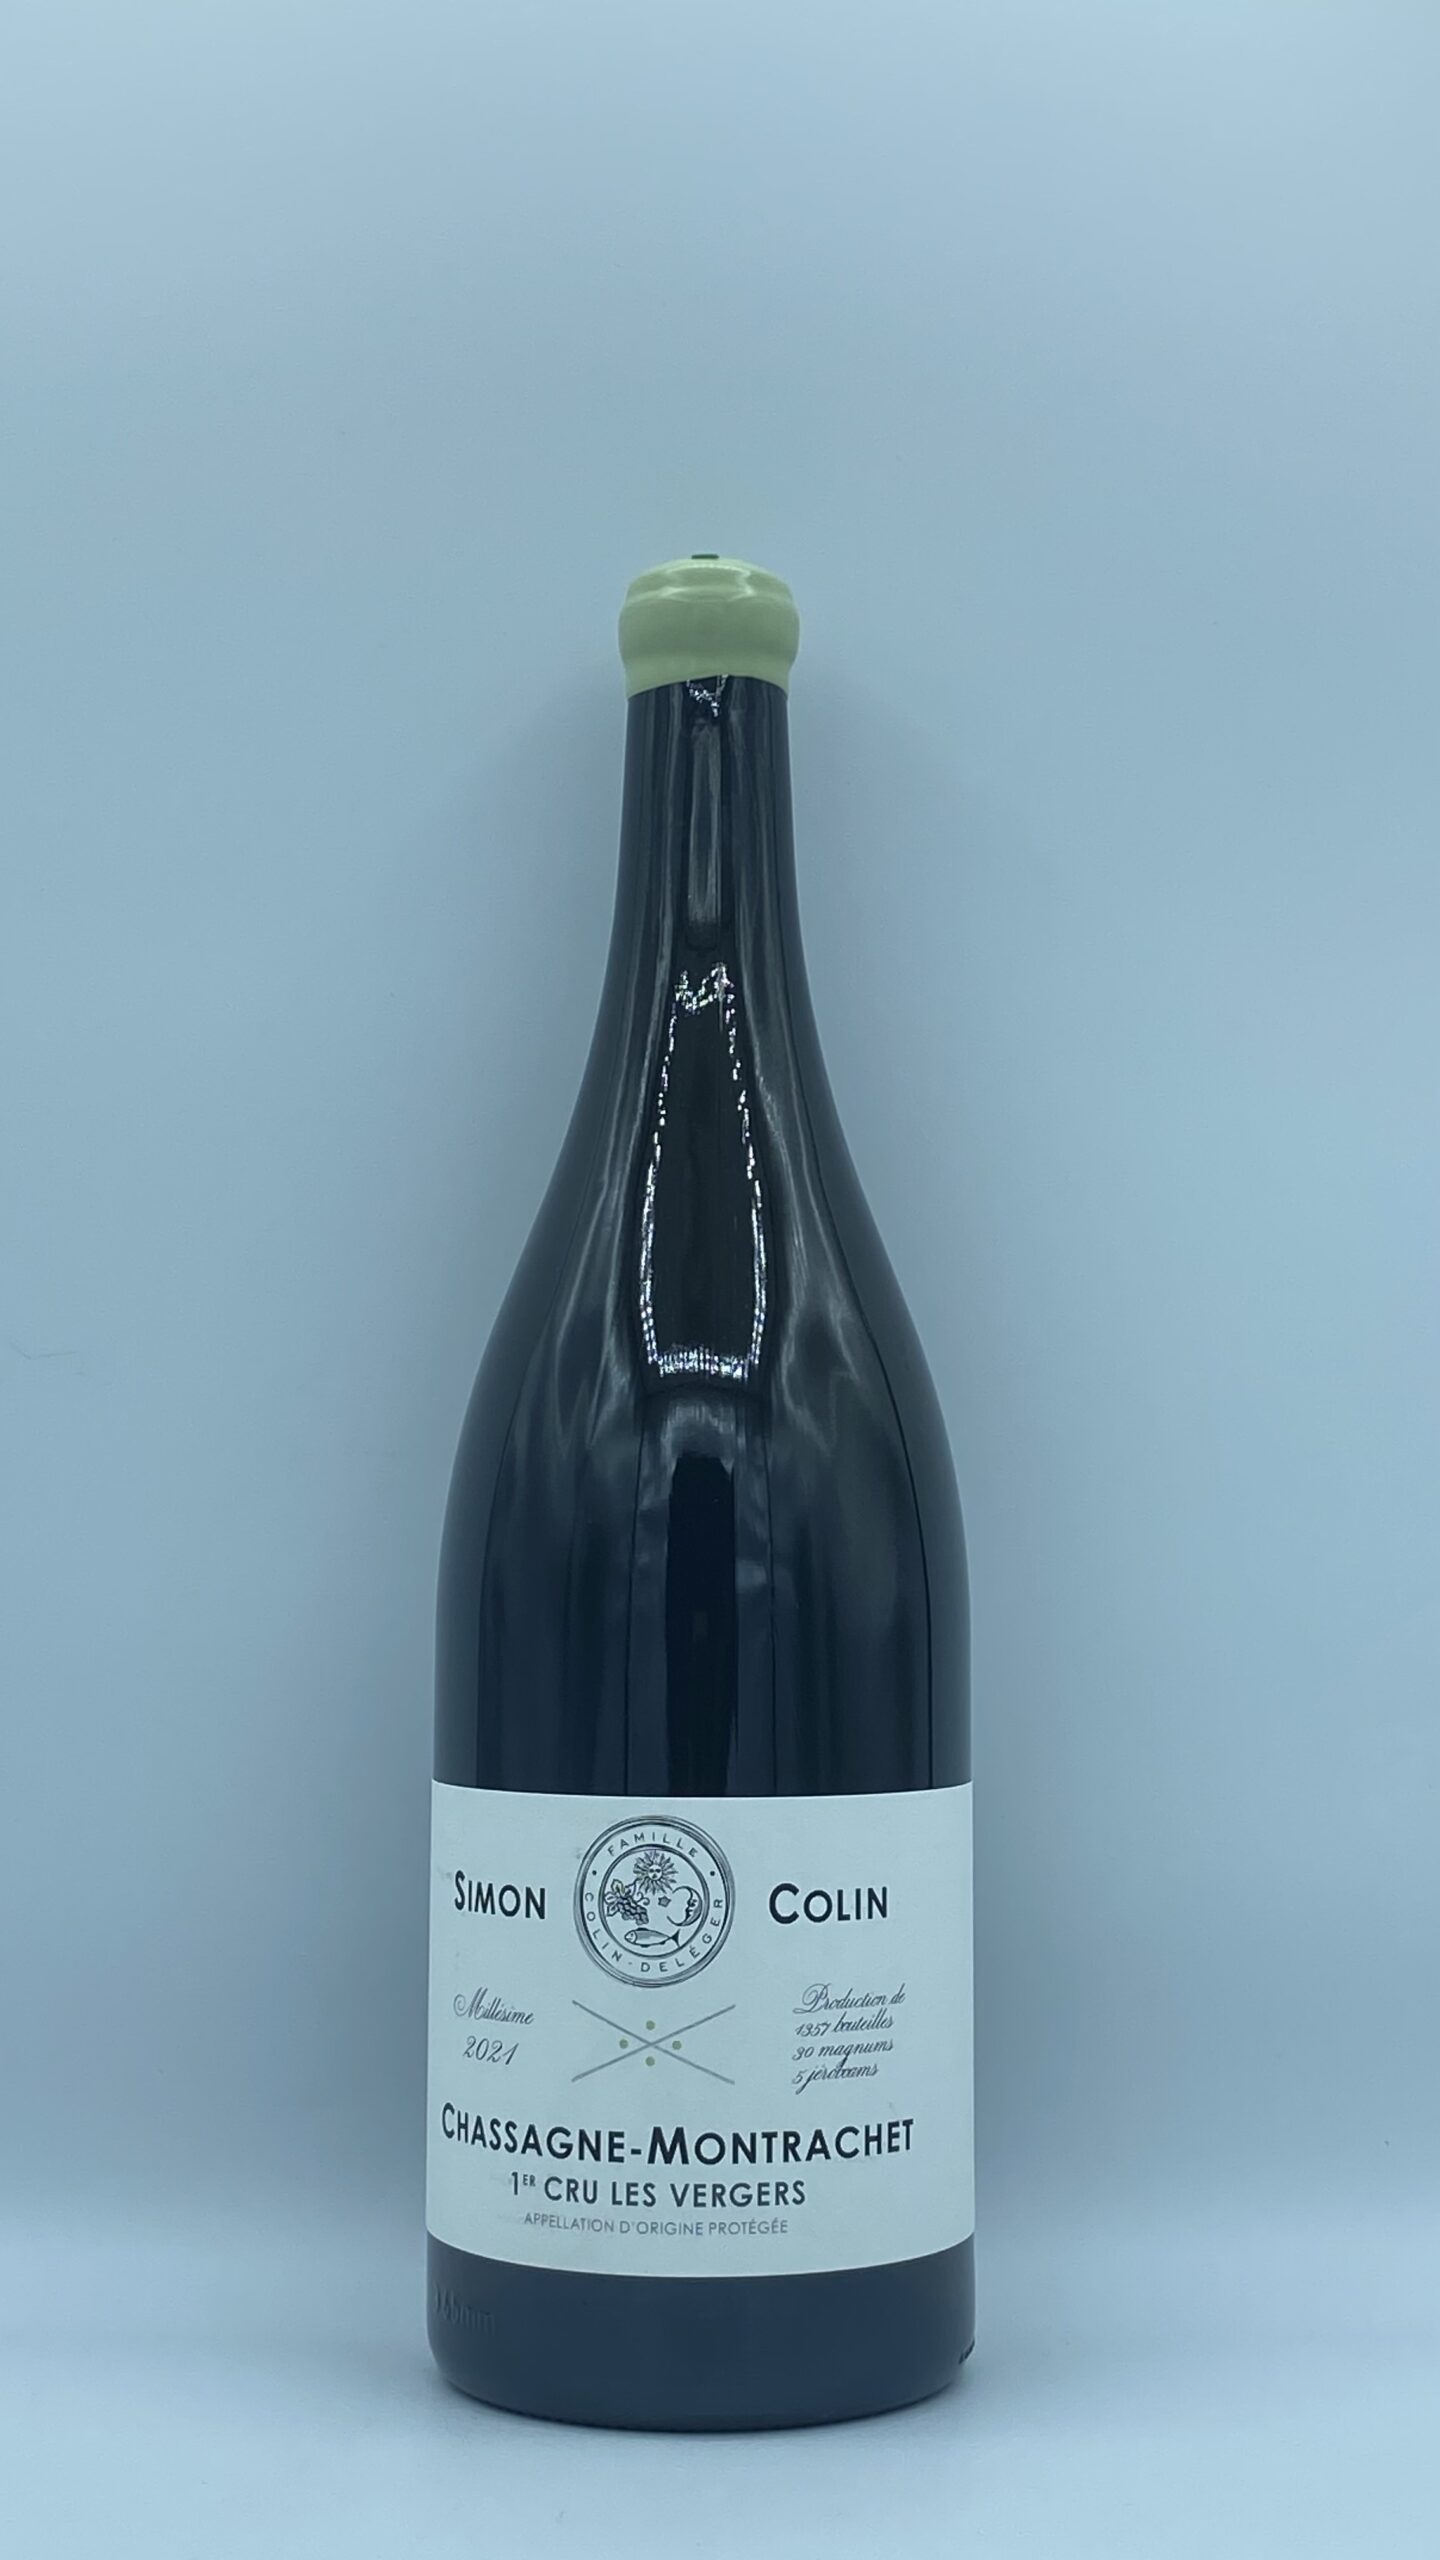 Bourgogne Magnum Chassagne-Montrachet 1er cru “Les Vergers” 2021 Domaine Simon Colin